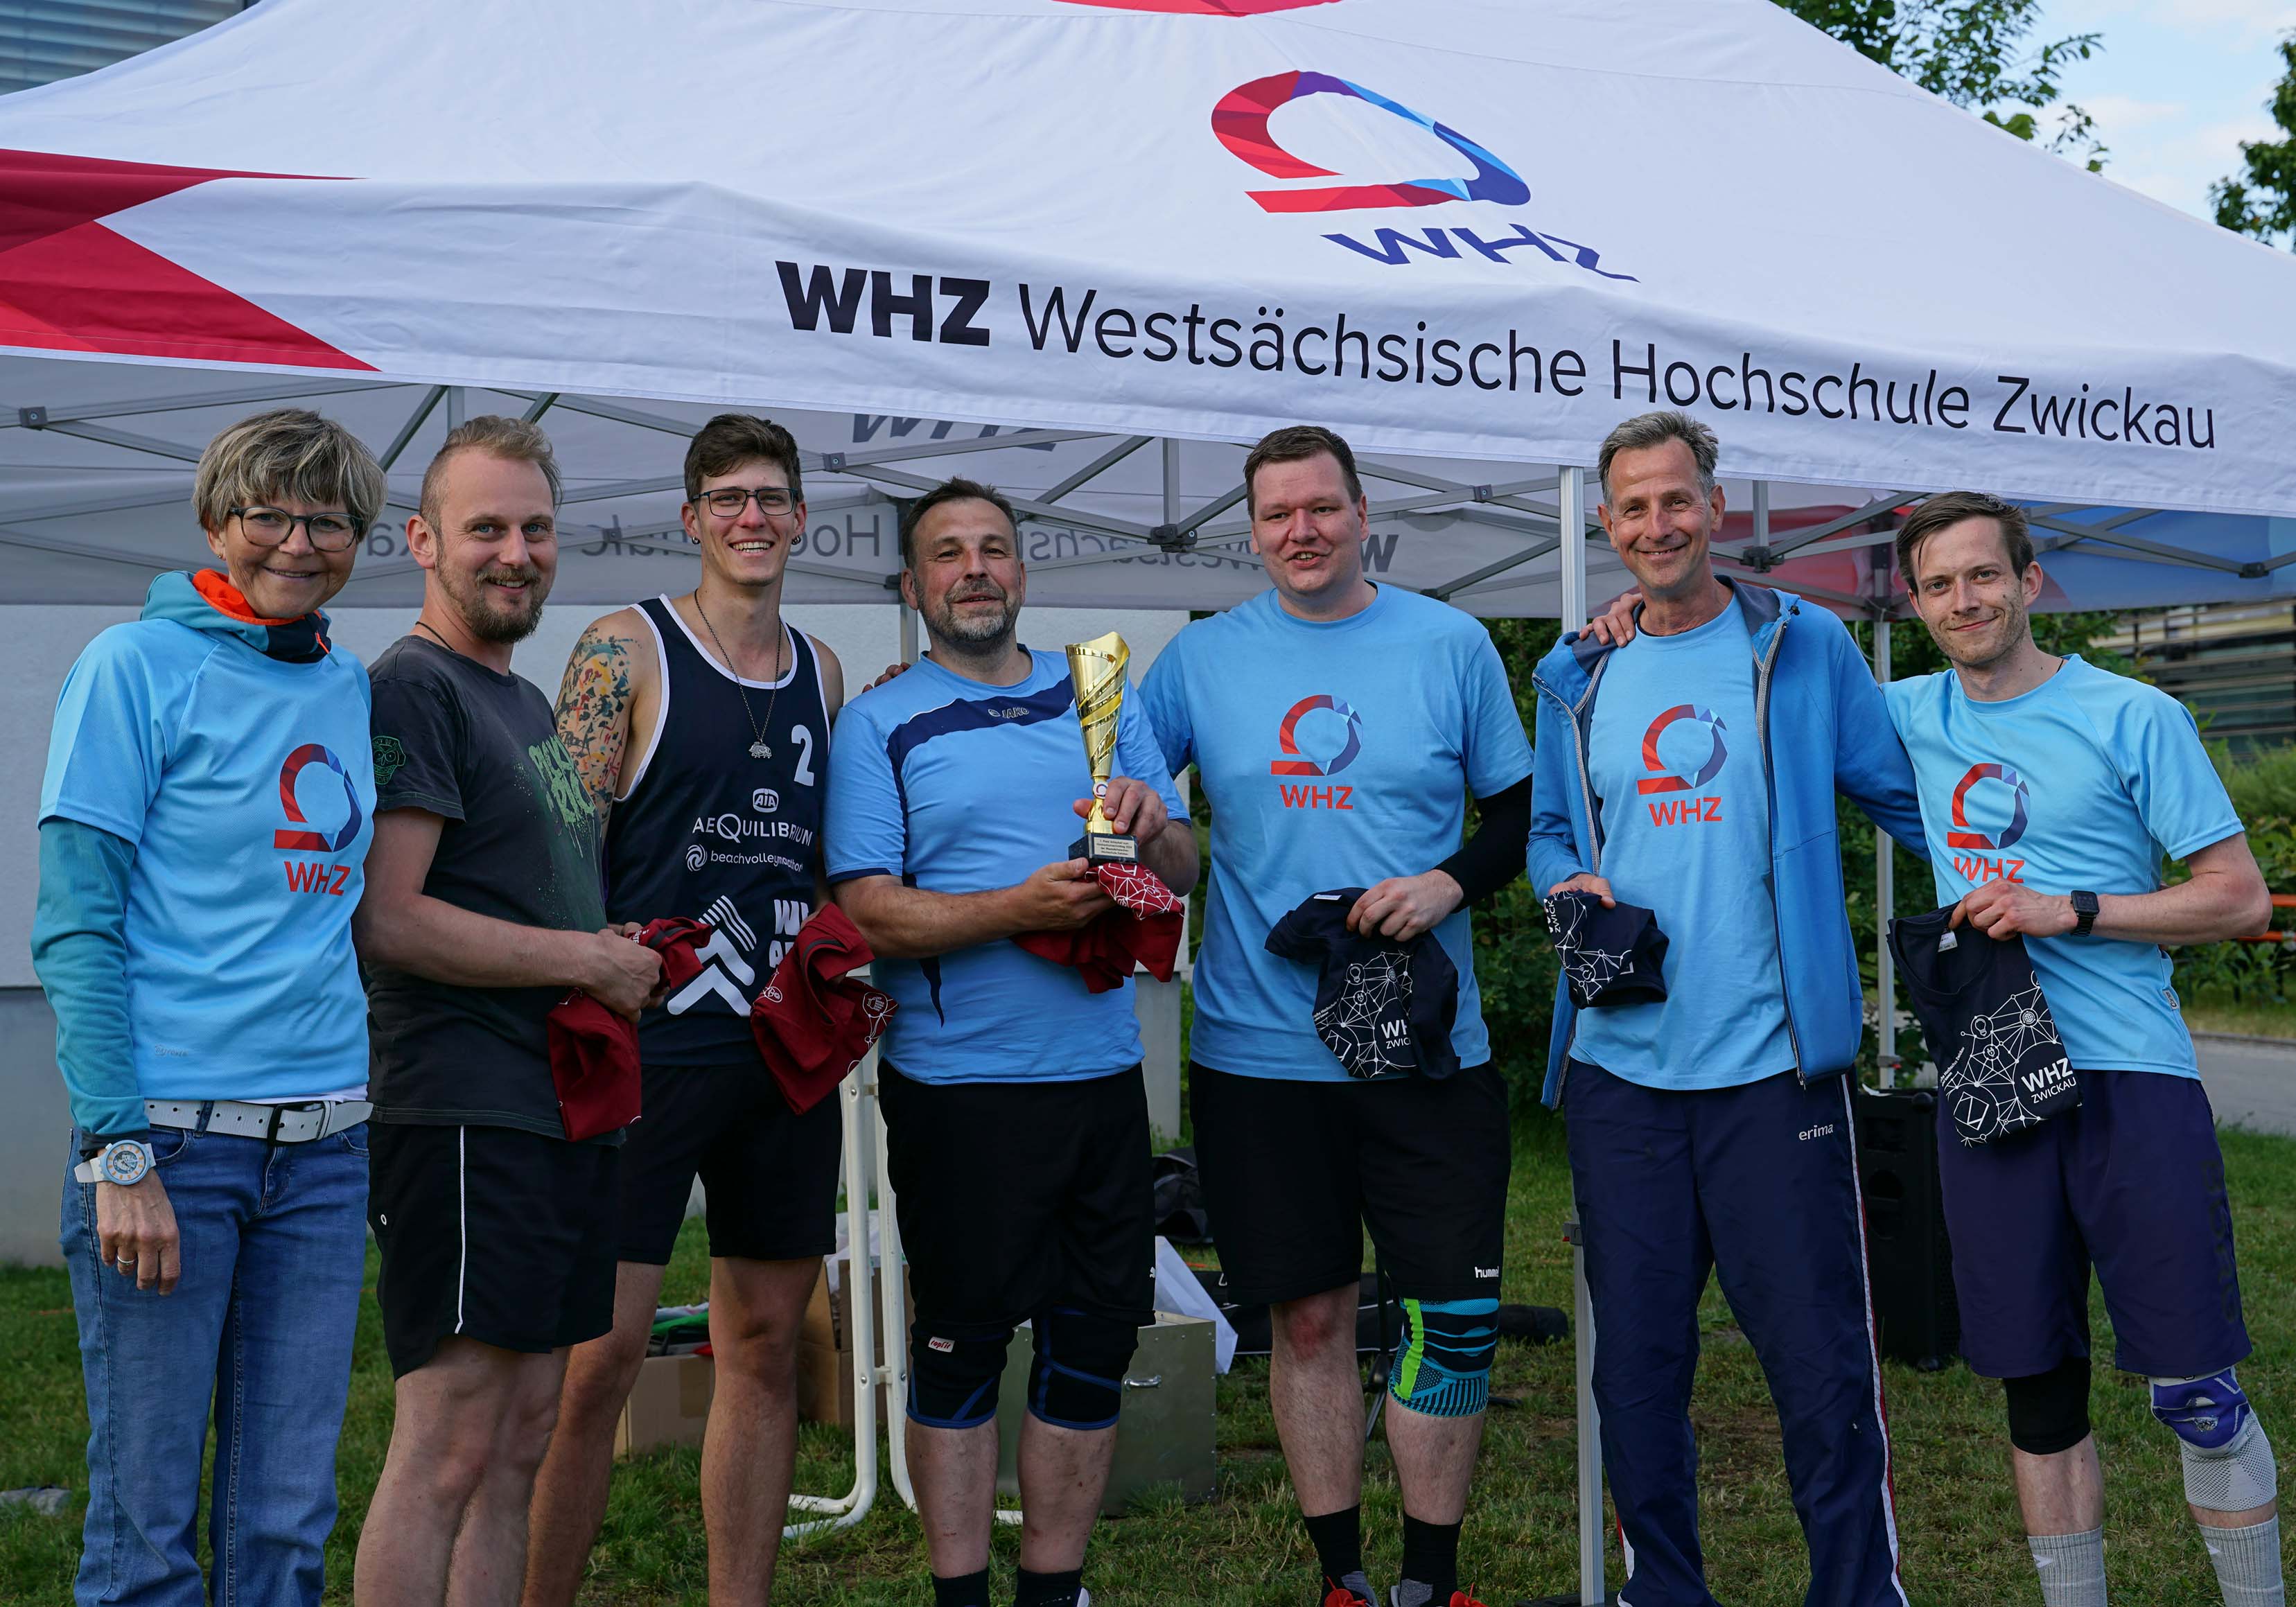 Gruppe aus Männern und Frauen in hellblauen T-Shirts der Hochschule zwickau hält Pokal als Sieger des Volleybalturniers in der Hand